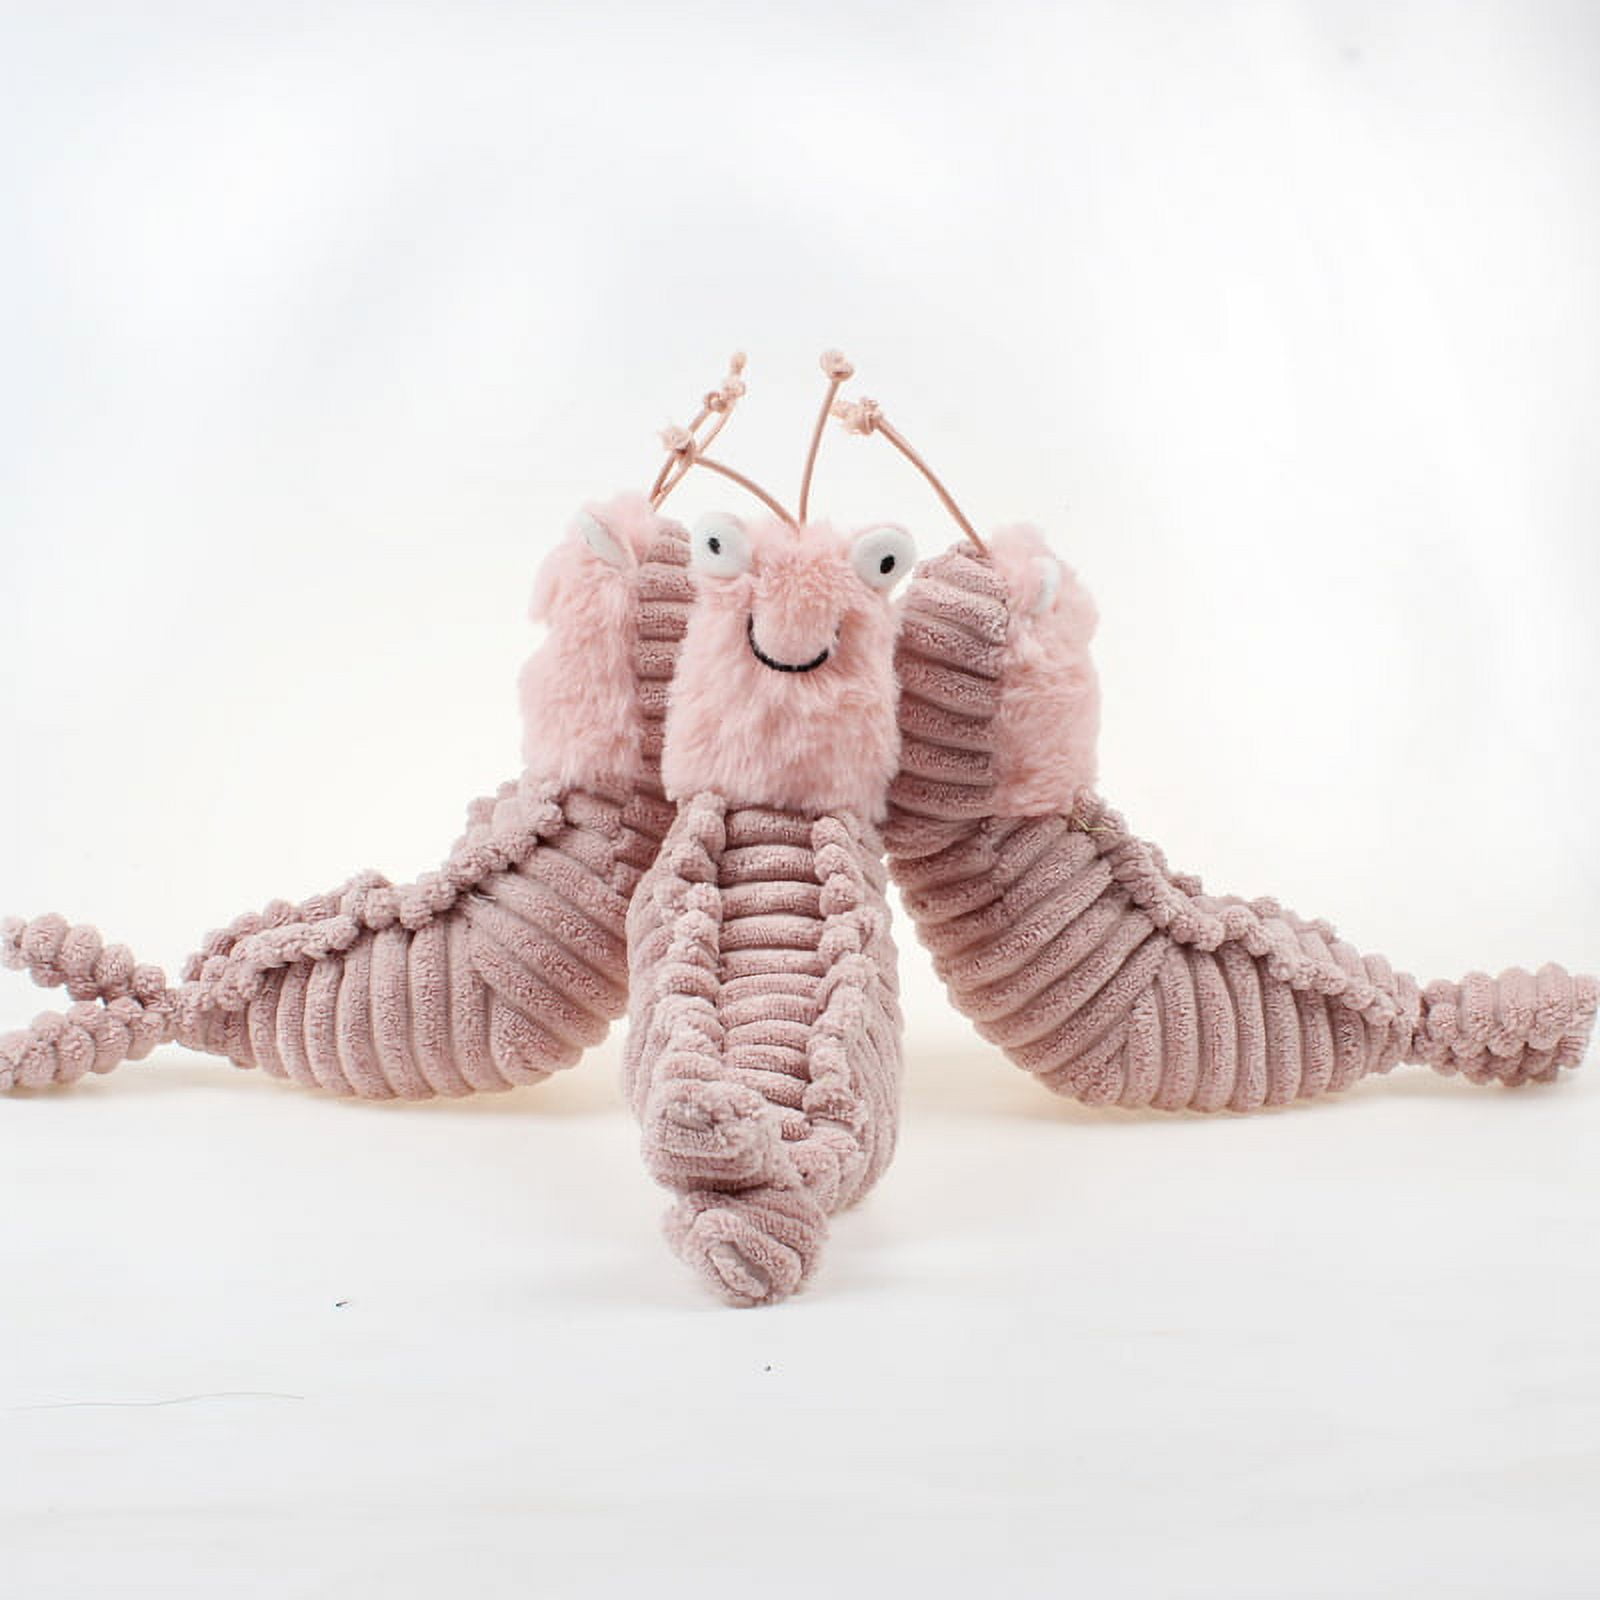 Sheldon Shrimp Plush Cute Stuffed Animal Toy Kawaii Mantis Shrimp